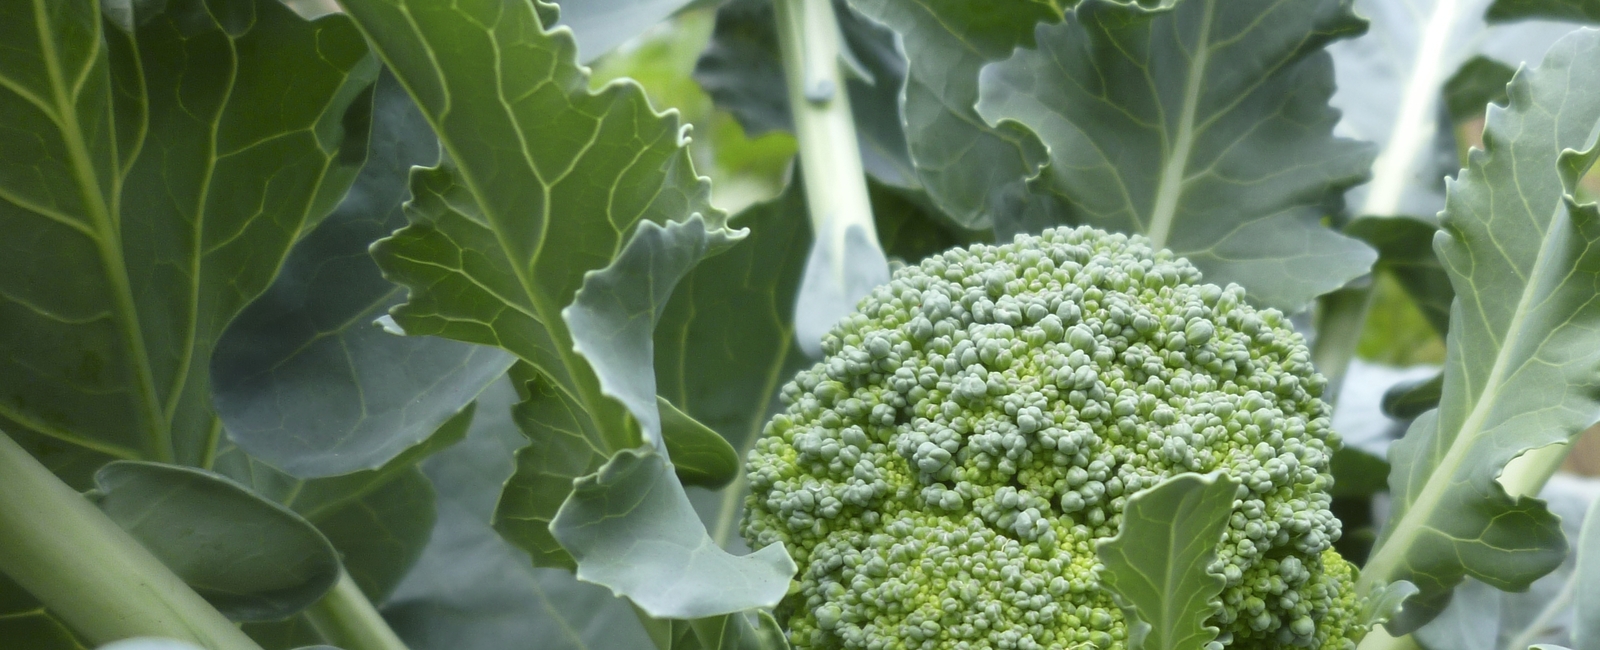 Brocolli crop nutrition